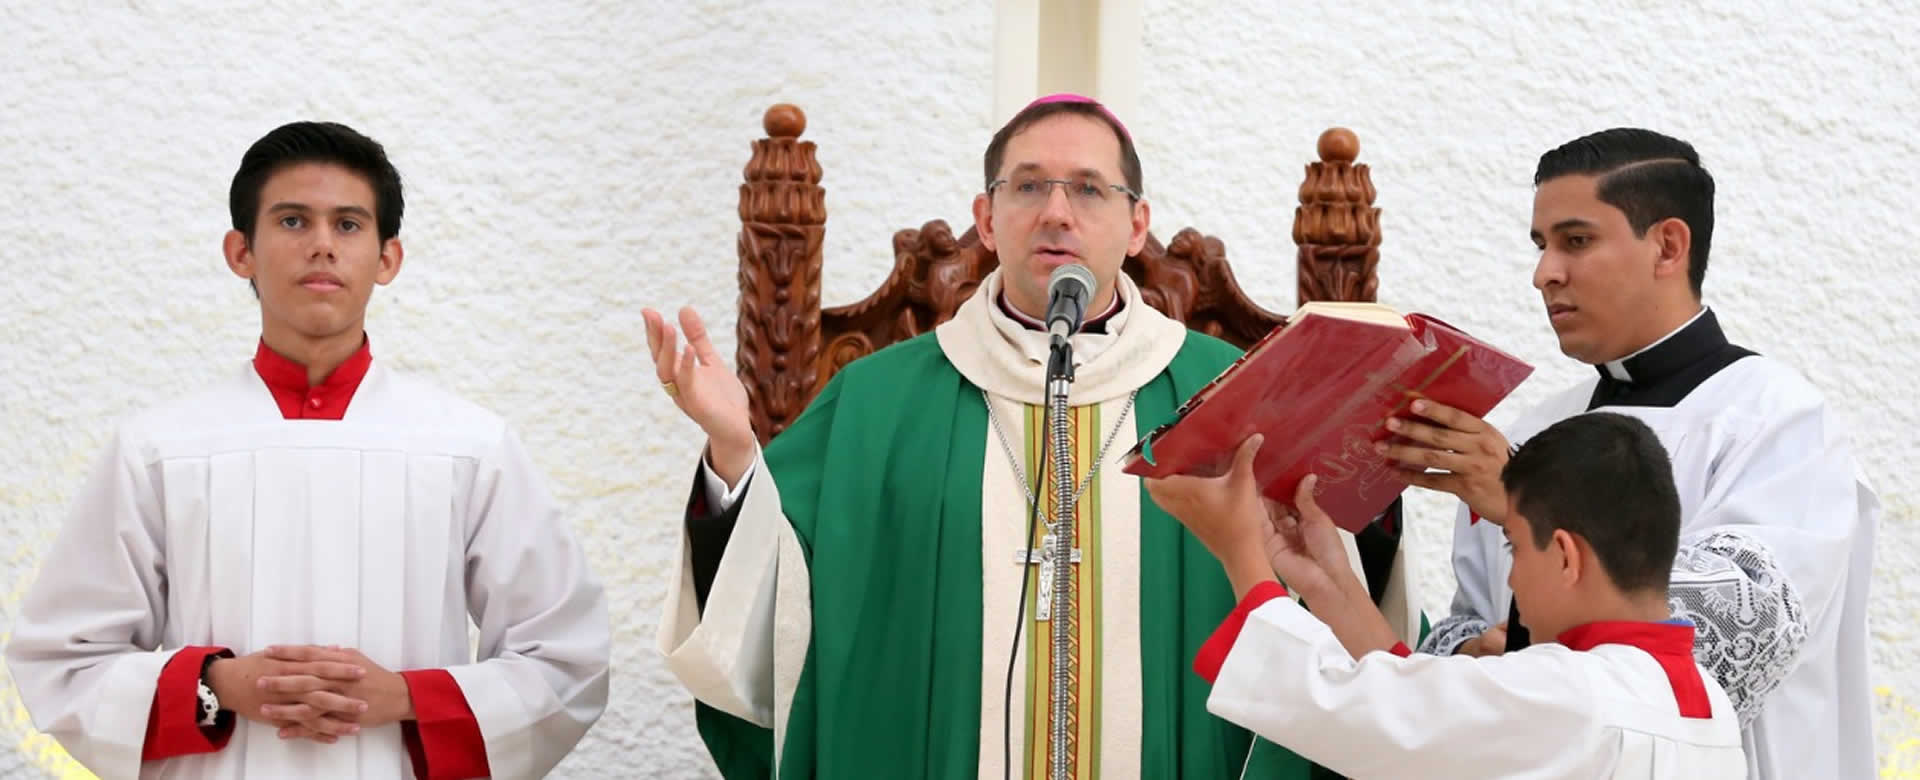 Nuncio Waldemar ora por la Paz y la Reconciliación en Nicaragua